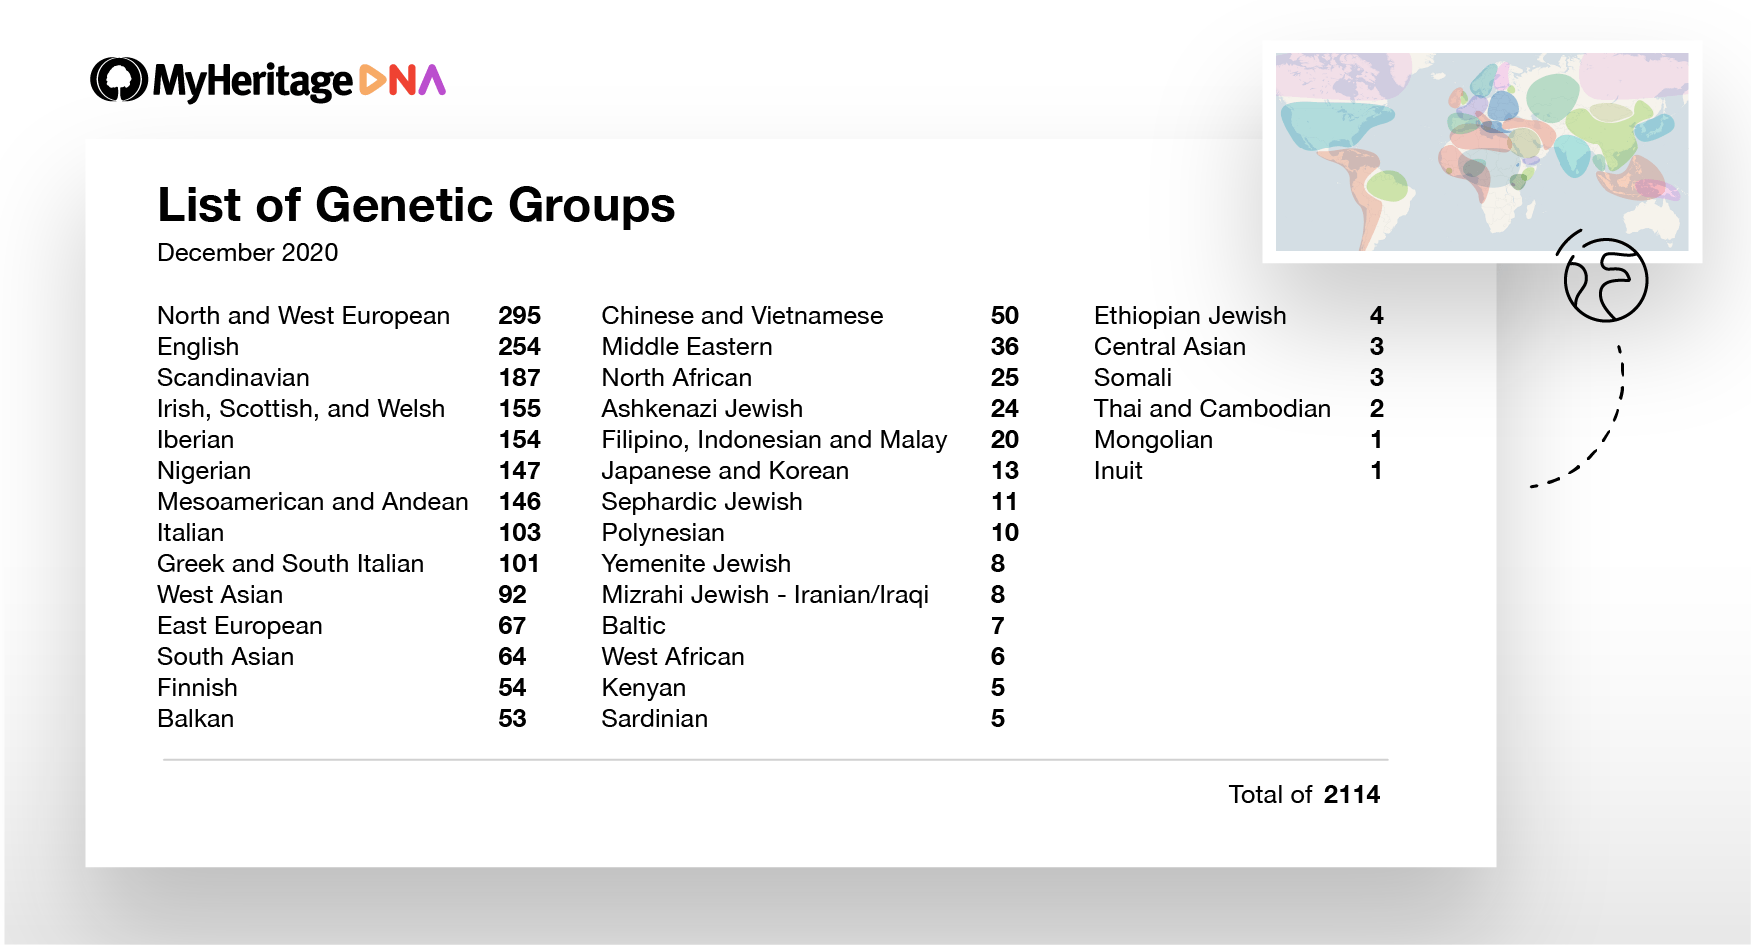 Lista över antalet genetiska grupper som finns tillgängliga idag, under deras huvudsakliga etniciteter på toppnivå. Det finns till exempel 103 genetiska grupper som huvudsakligen är italienska och 54 genetiska grupper som är finska (Klicka för att zooma)